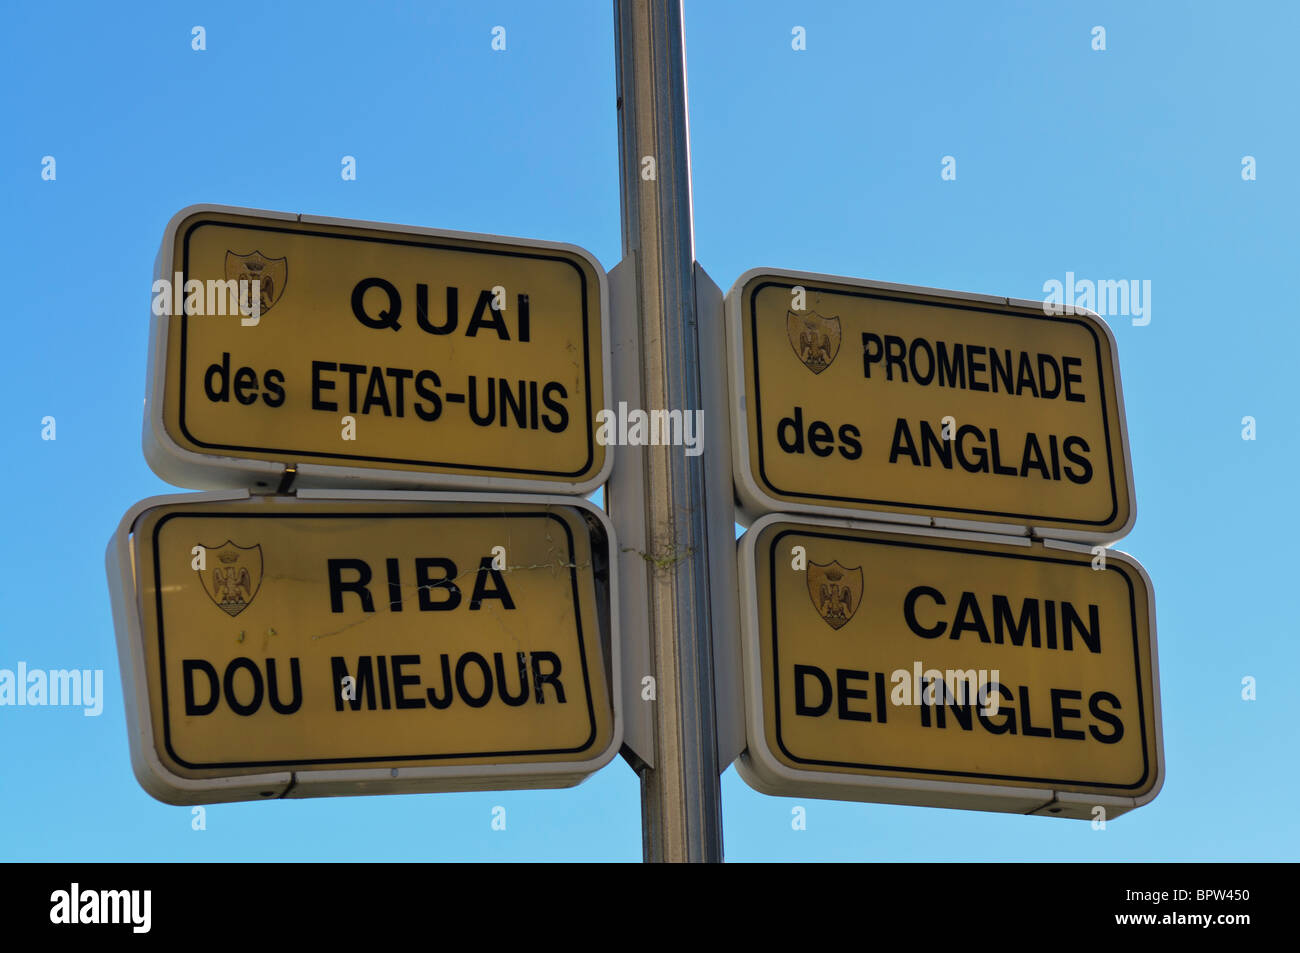 Straße Zeichen in Nizza - Quai des Etats-Unis, Promenade des Anglais, Riba Dou Miejour, Camin Dei Ingles Stockfoto